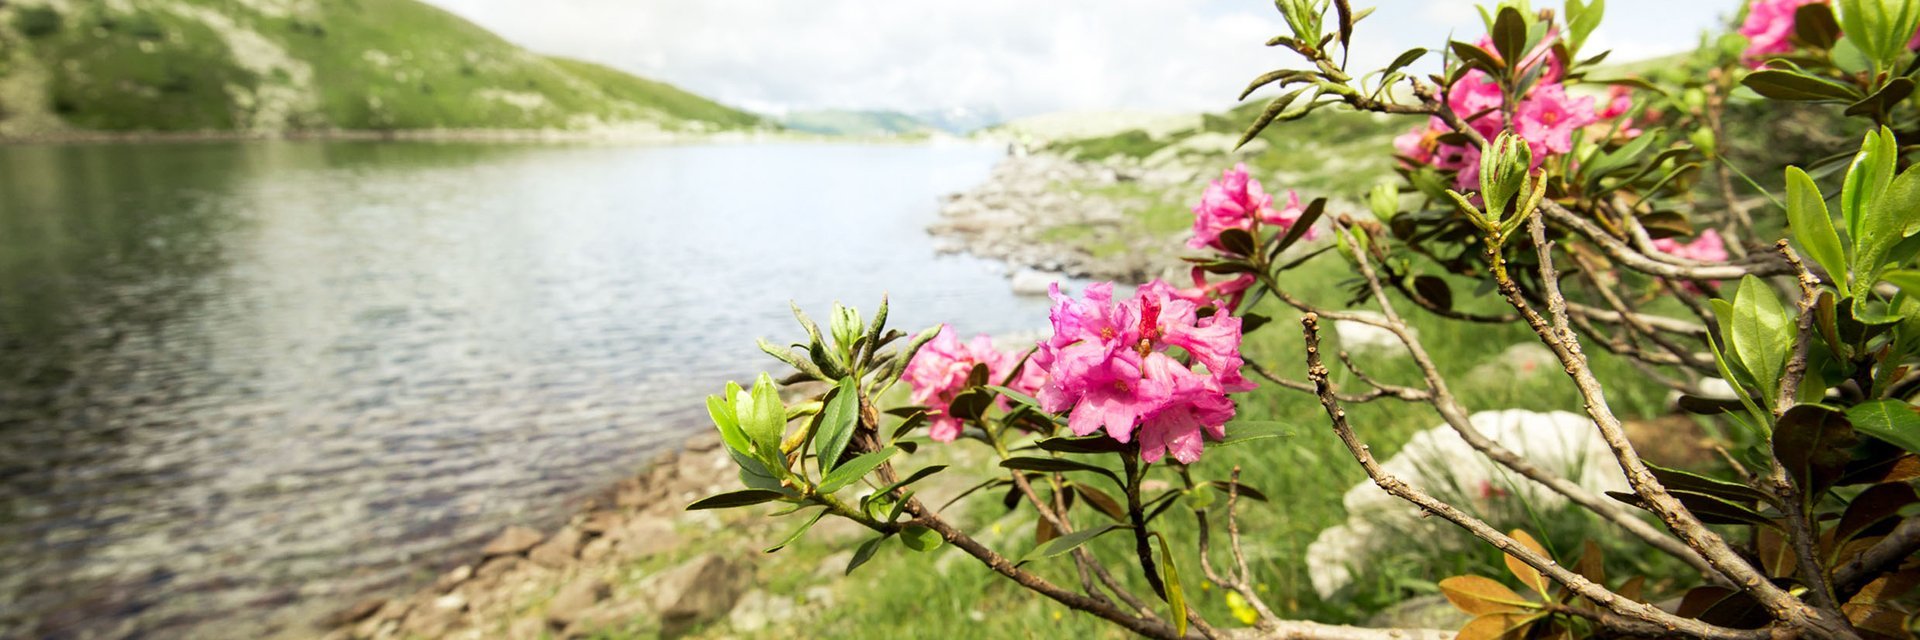 Palfnersee in Bad Gastein zur Sommerzeit mit Almröschen; Wanderung über Graukogel